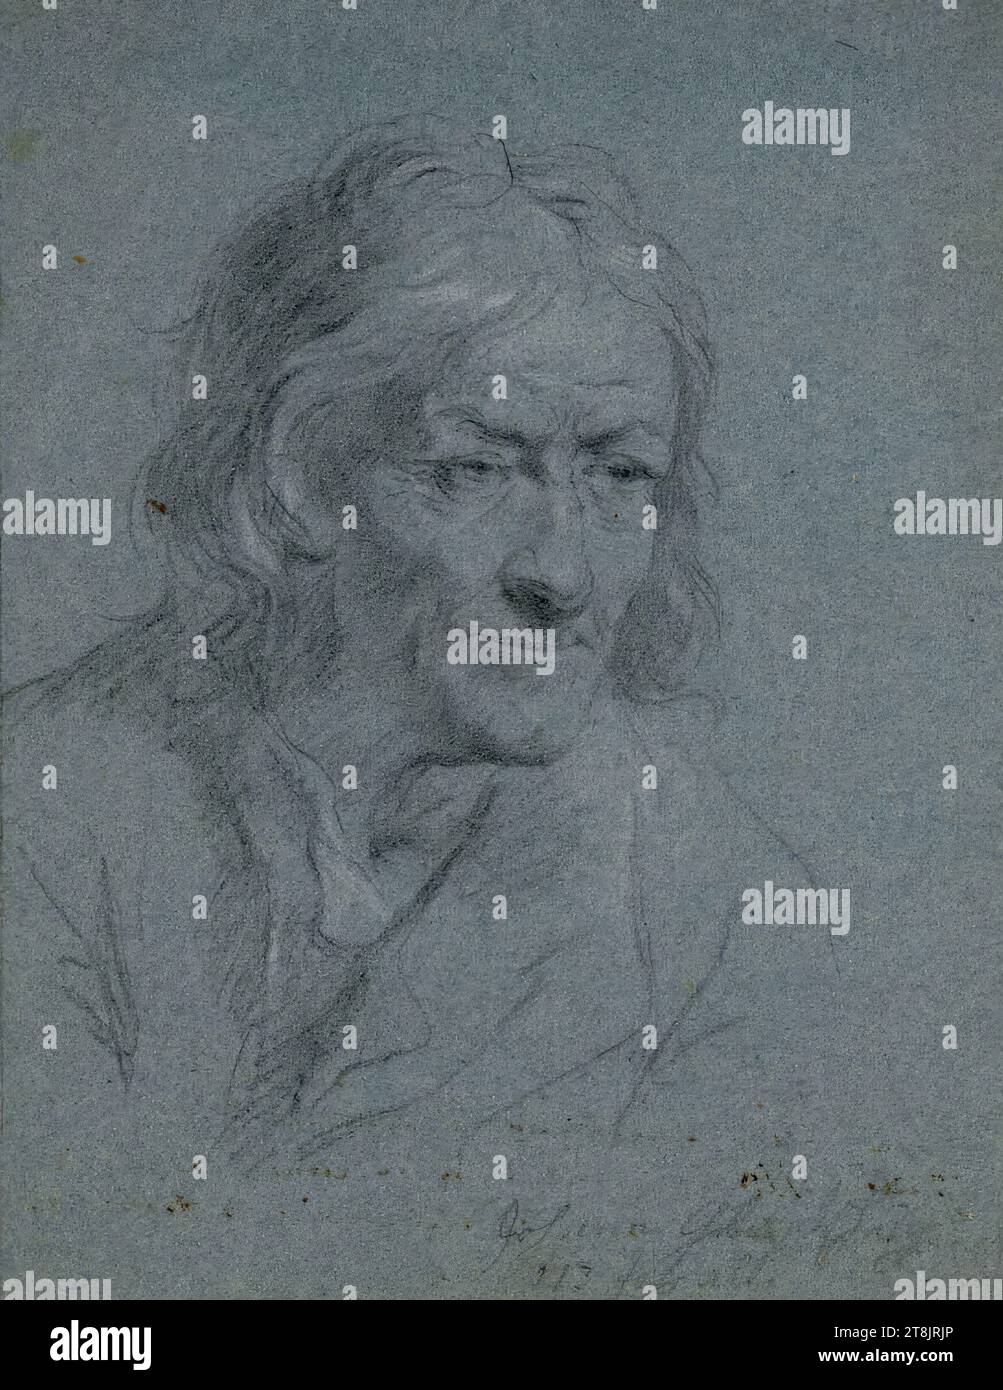 Johann Glantschnig, étude de portrait, Franz Linder, Klagenfurt 1736/38 - 1802 Vienne, dessin, craie noire et blanche sur papier bleu, 21 x 16,4 cm, à droite. 'Johann Glantsching 113 ans, Autriche Banque D'Images